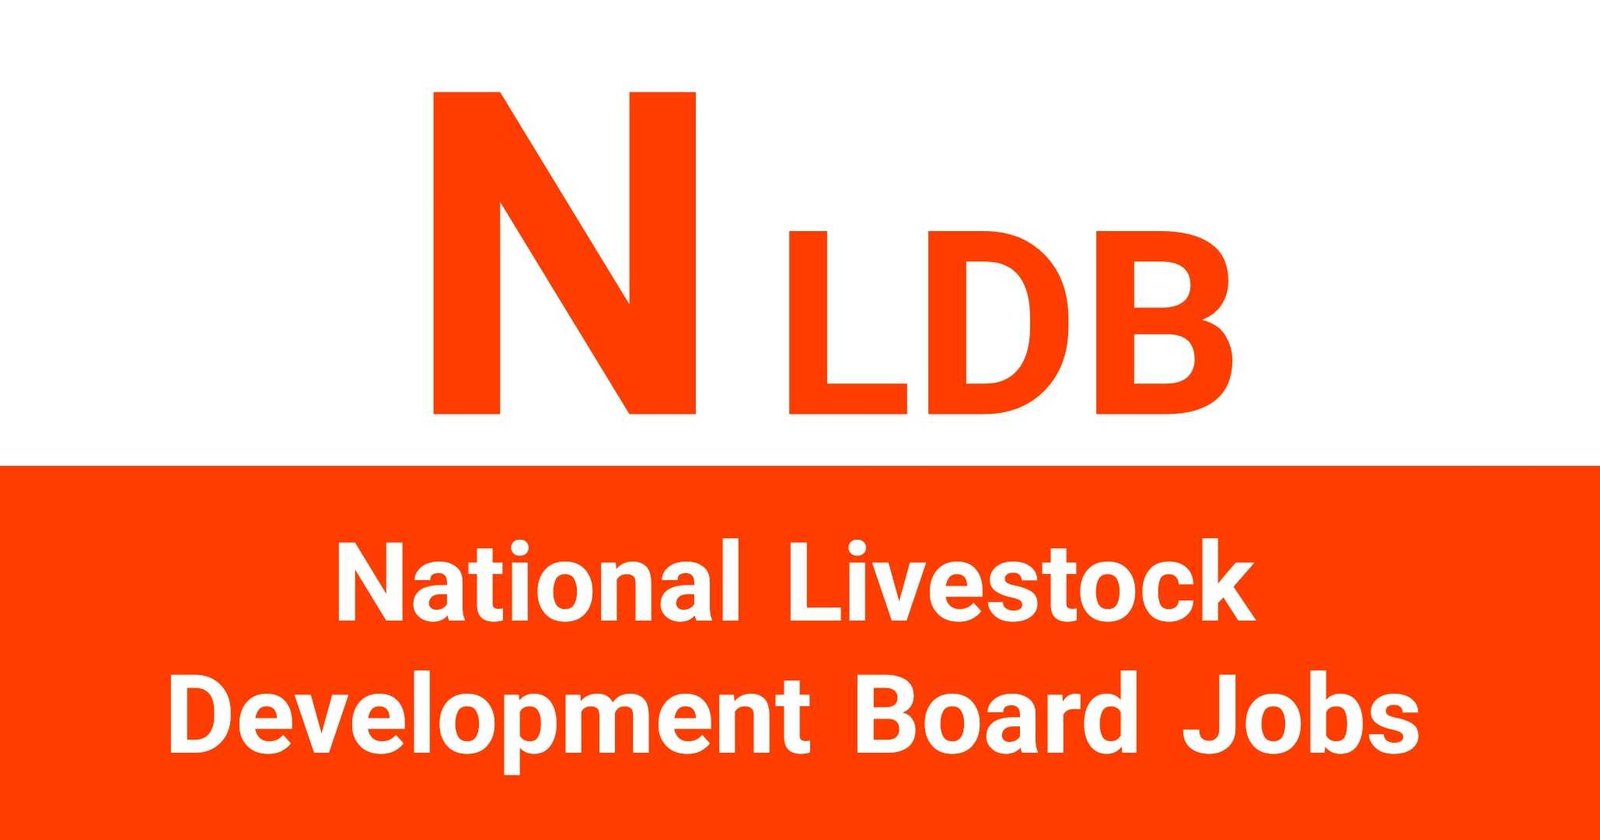 National Livestock Development Board Jobs Vacancies Careers